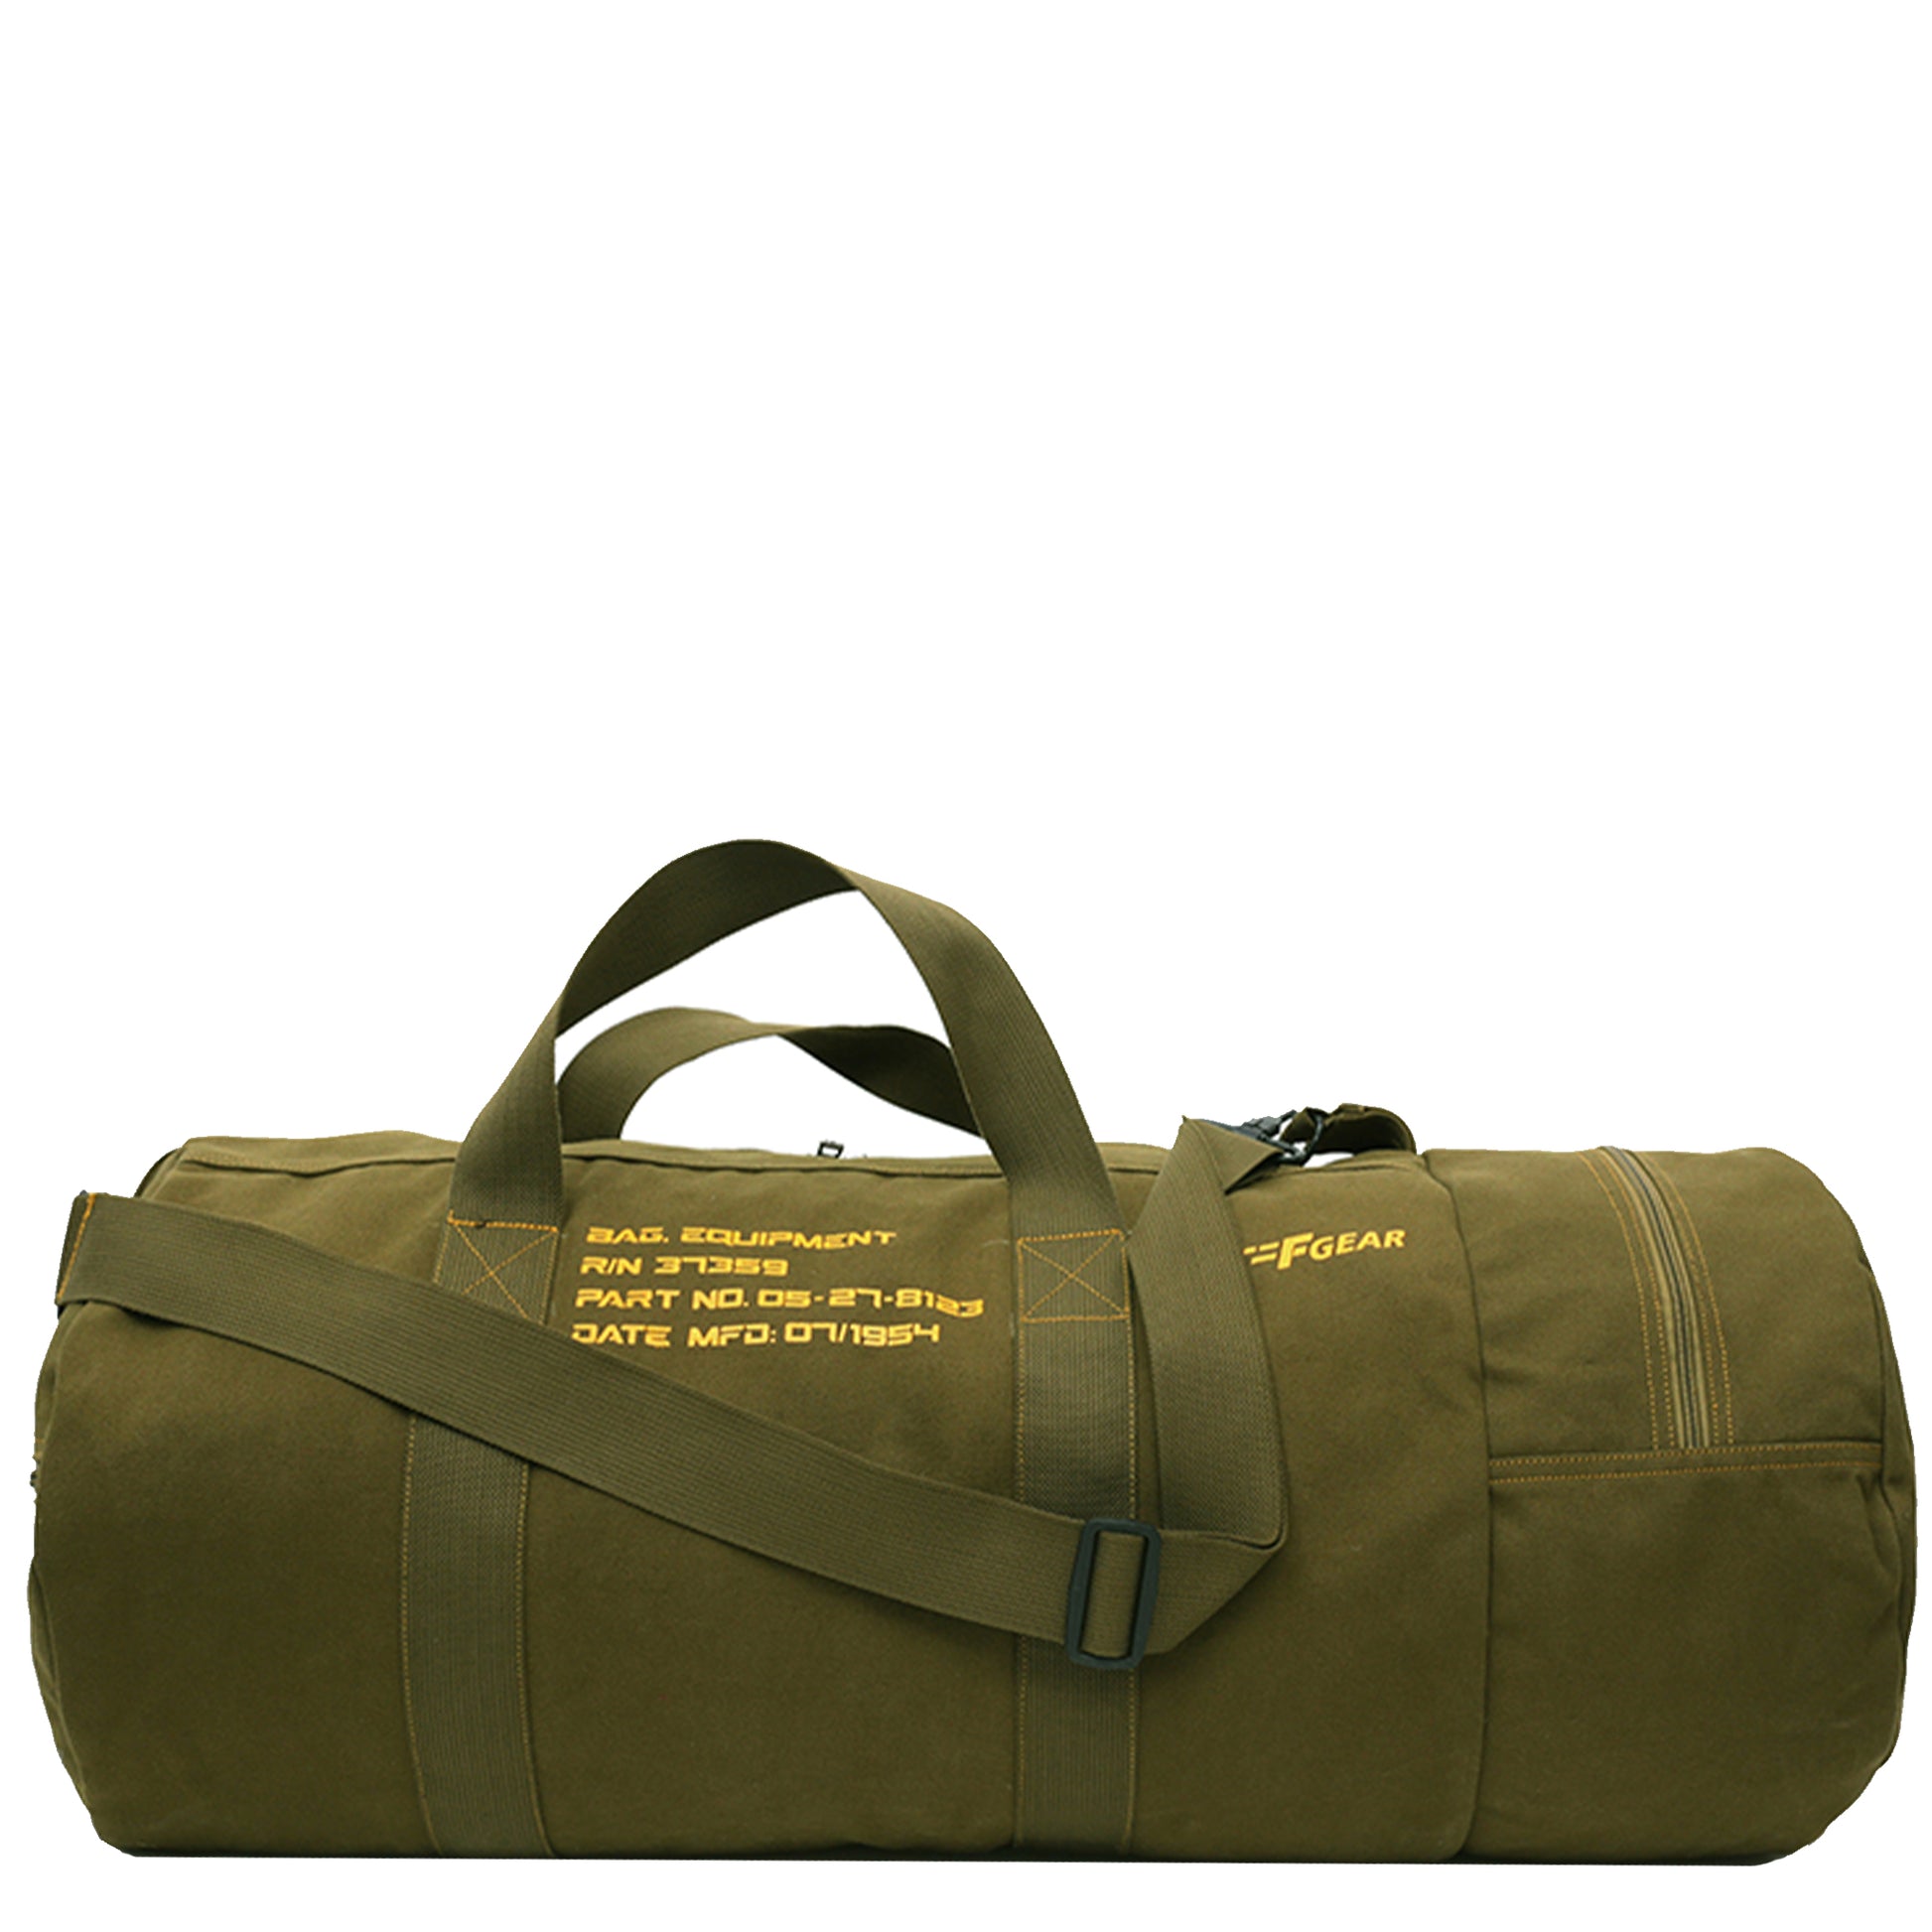 Duffle Bag & Weekender Bag